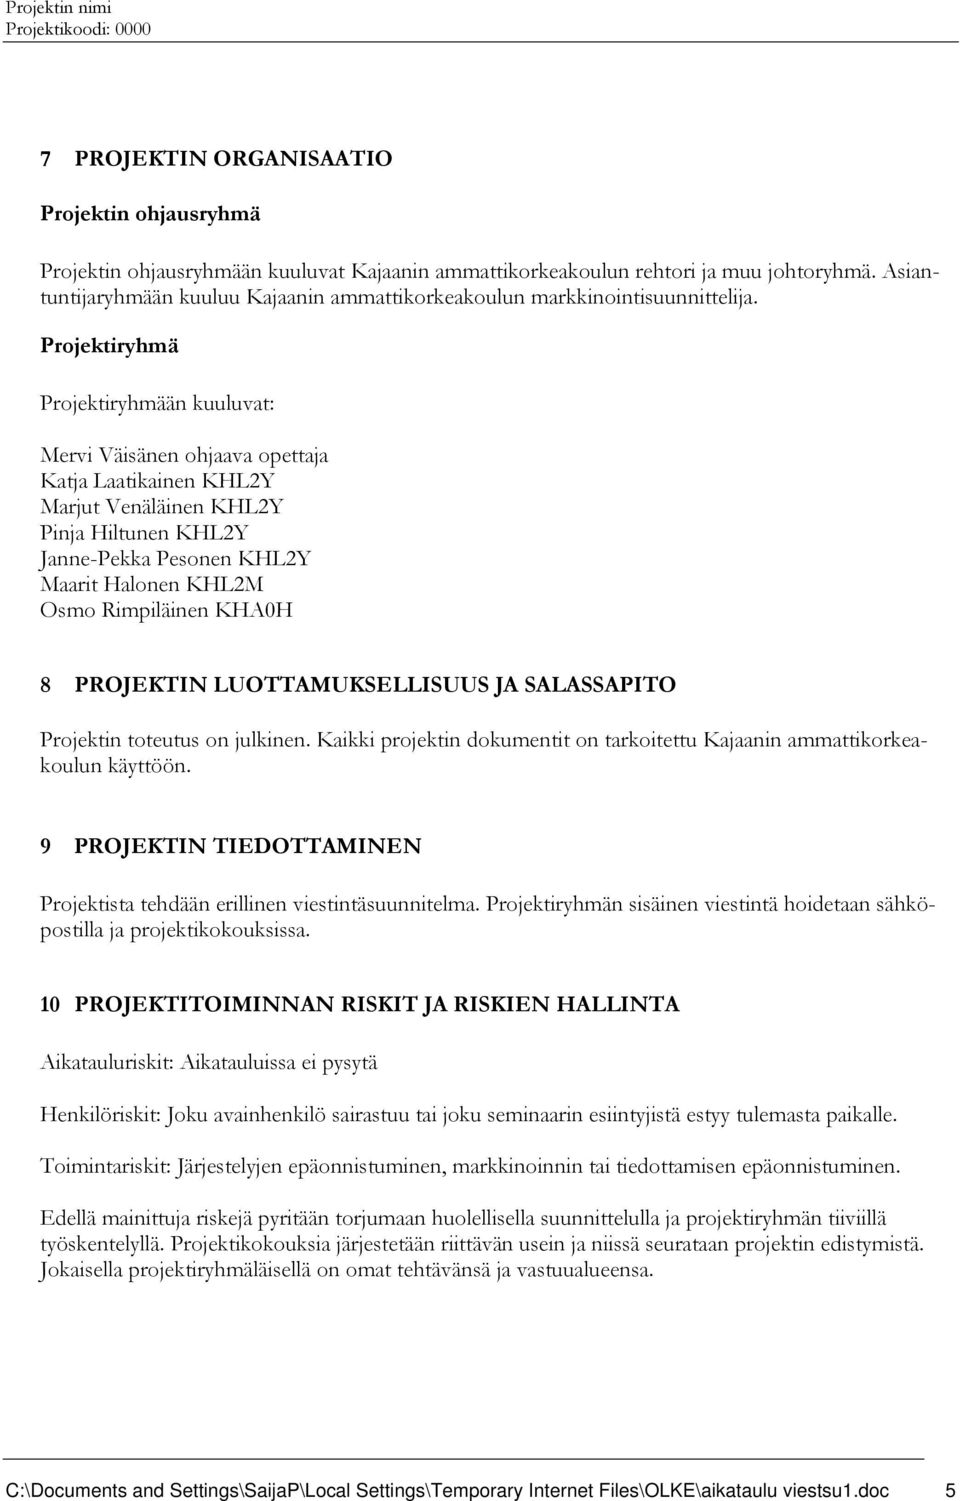 Projektiryhmä Projektiryhmään kuuluvat: Mervi Väisänen ohjaava opettaja Katja Laatikainen KHL2Y Marjut Venäläinen KHL2Y Pinja Hiltunen KHL2Y Janne-Pekka Pesonen KHL2Y Maarit Halonen KHL2M Osmo